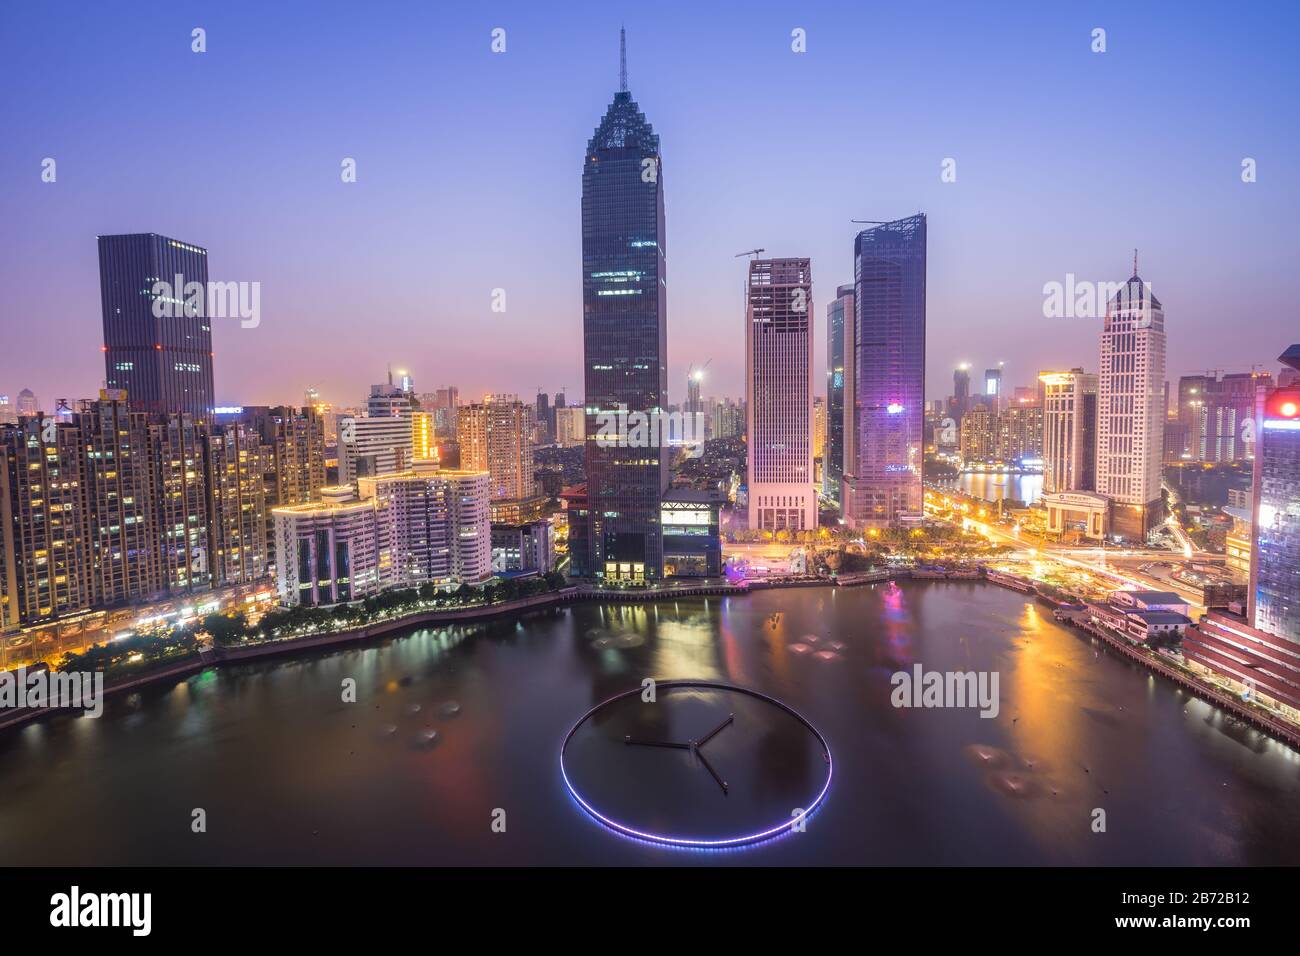 Vue aérienne de nuit du quartier financier de Wuhan, Hubei, Chine.concept financier Banque D'Images